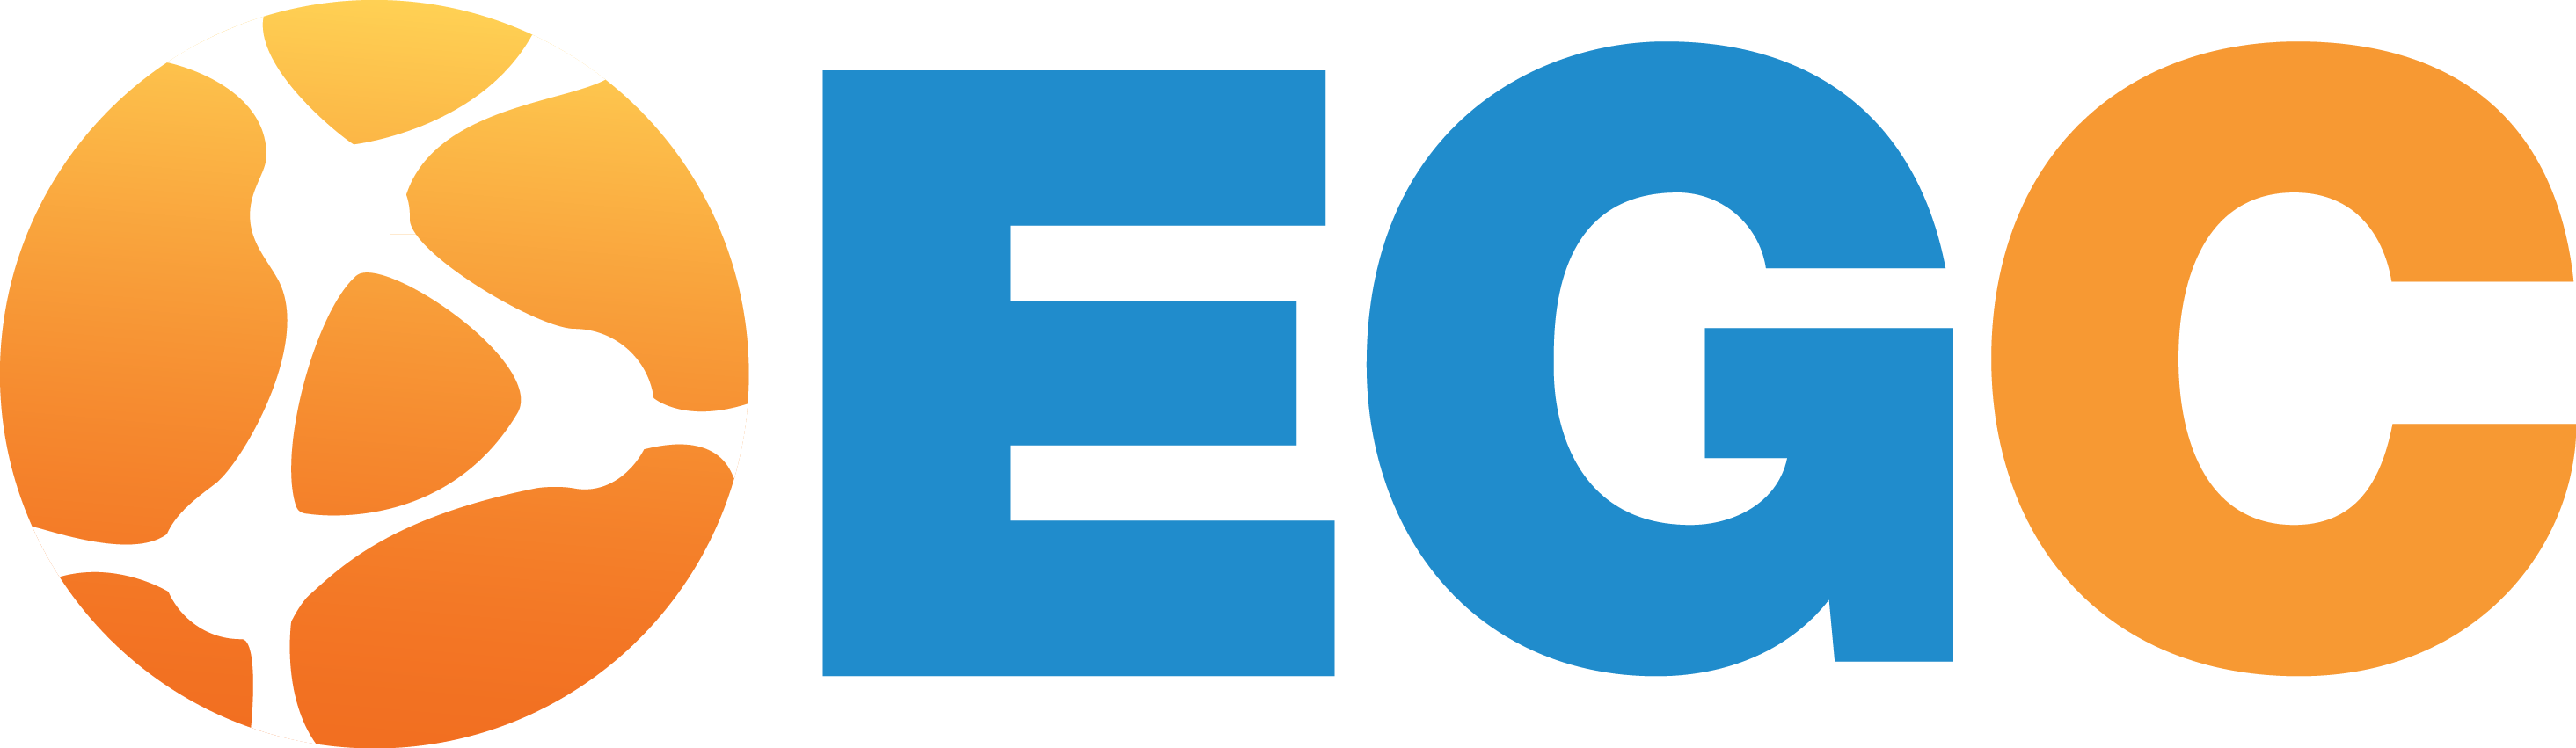 EGC - Engenharia e Gestão do Conhecimento